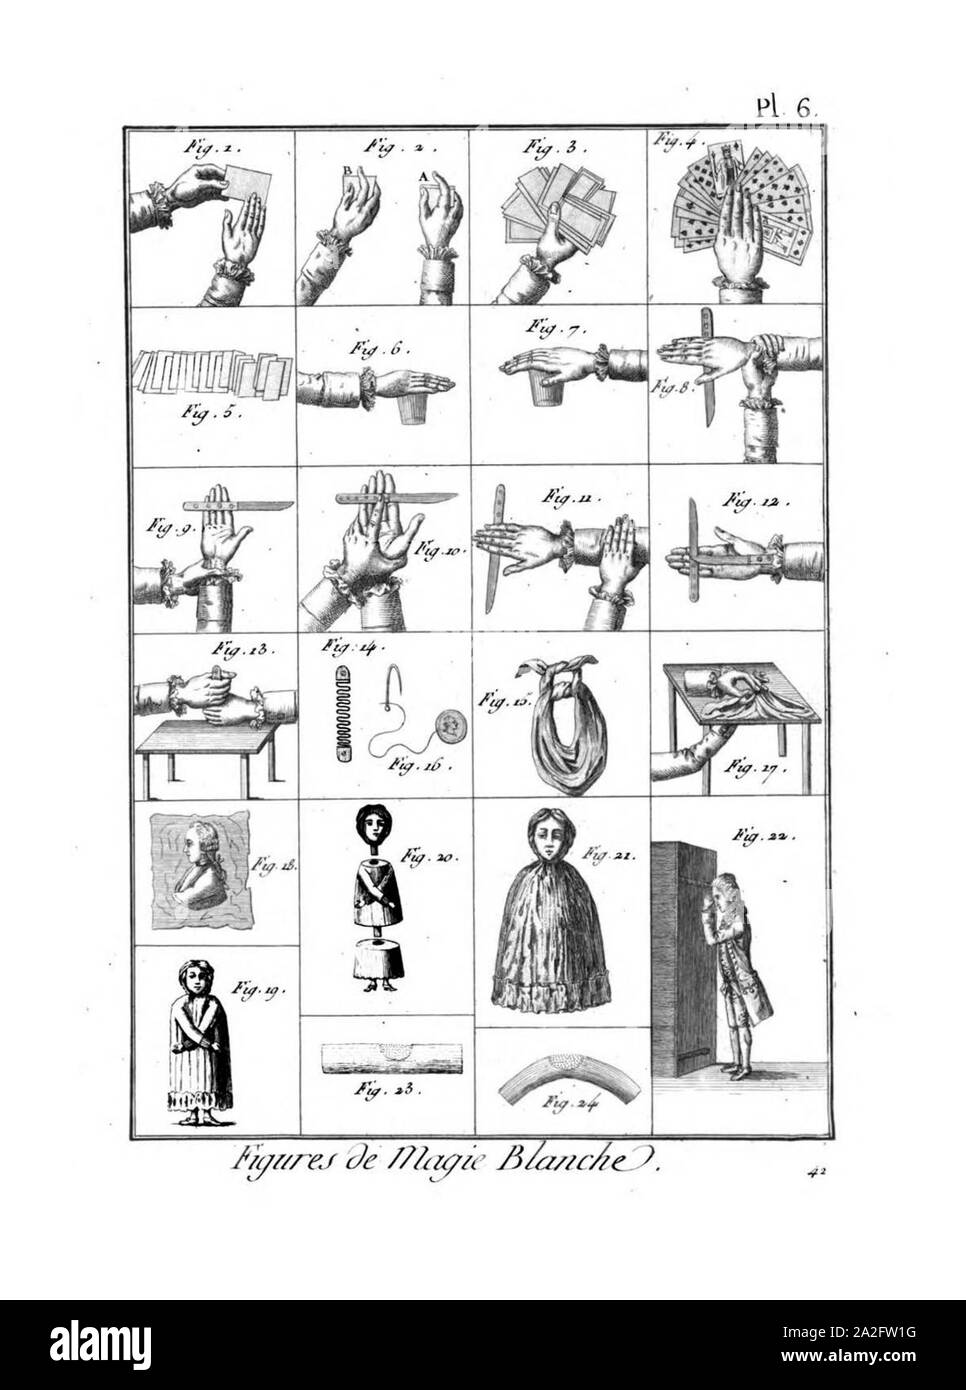 Encyclopédie méthodique - Planches, T8,Pl483-Amusemens-18-6. Stock Photo